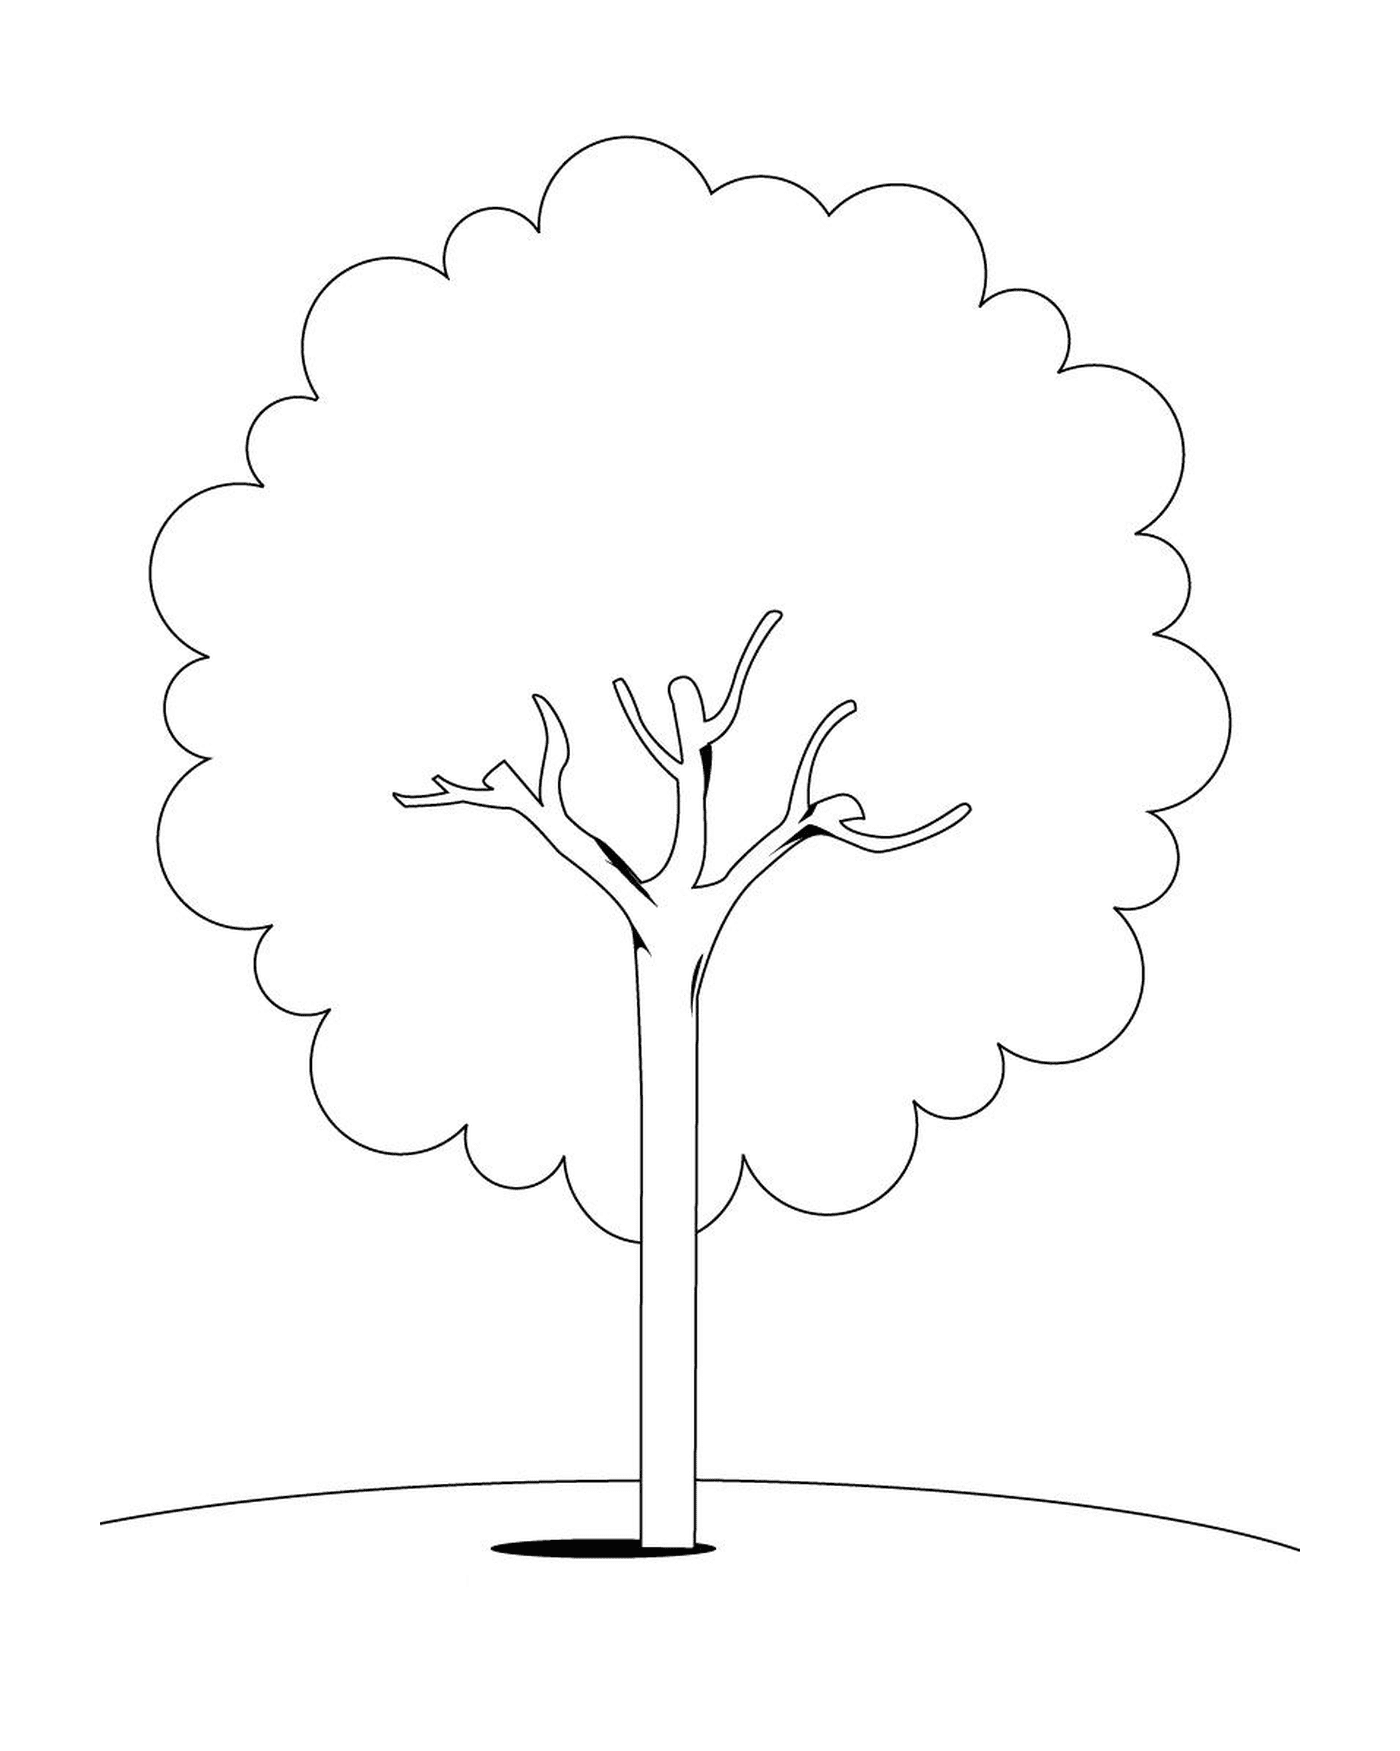  Изображение дерева 